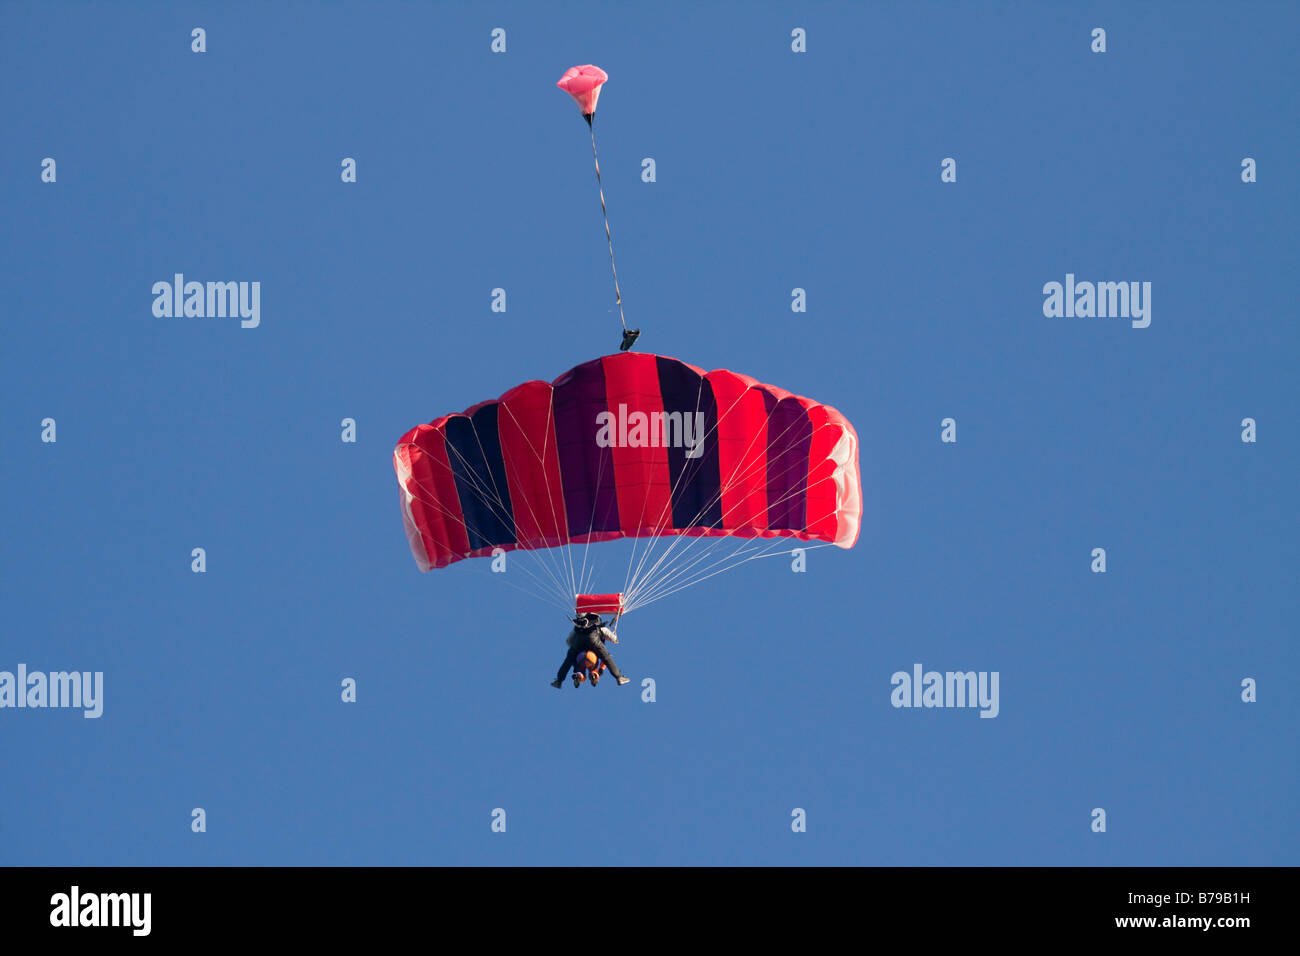 Parachutisme EN TANDEM EN ANGLETERRE Un parachute à rayures rouge transportant deux personnes GLISSE SUR LE CIEL BLEU Banque D'Images